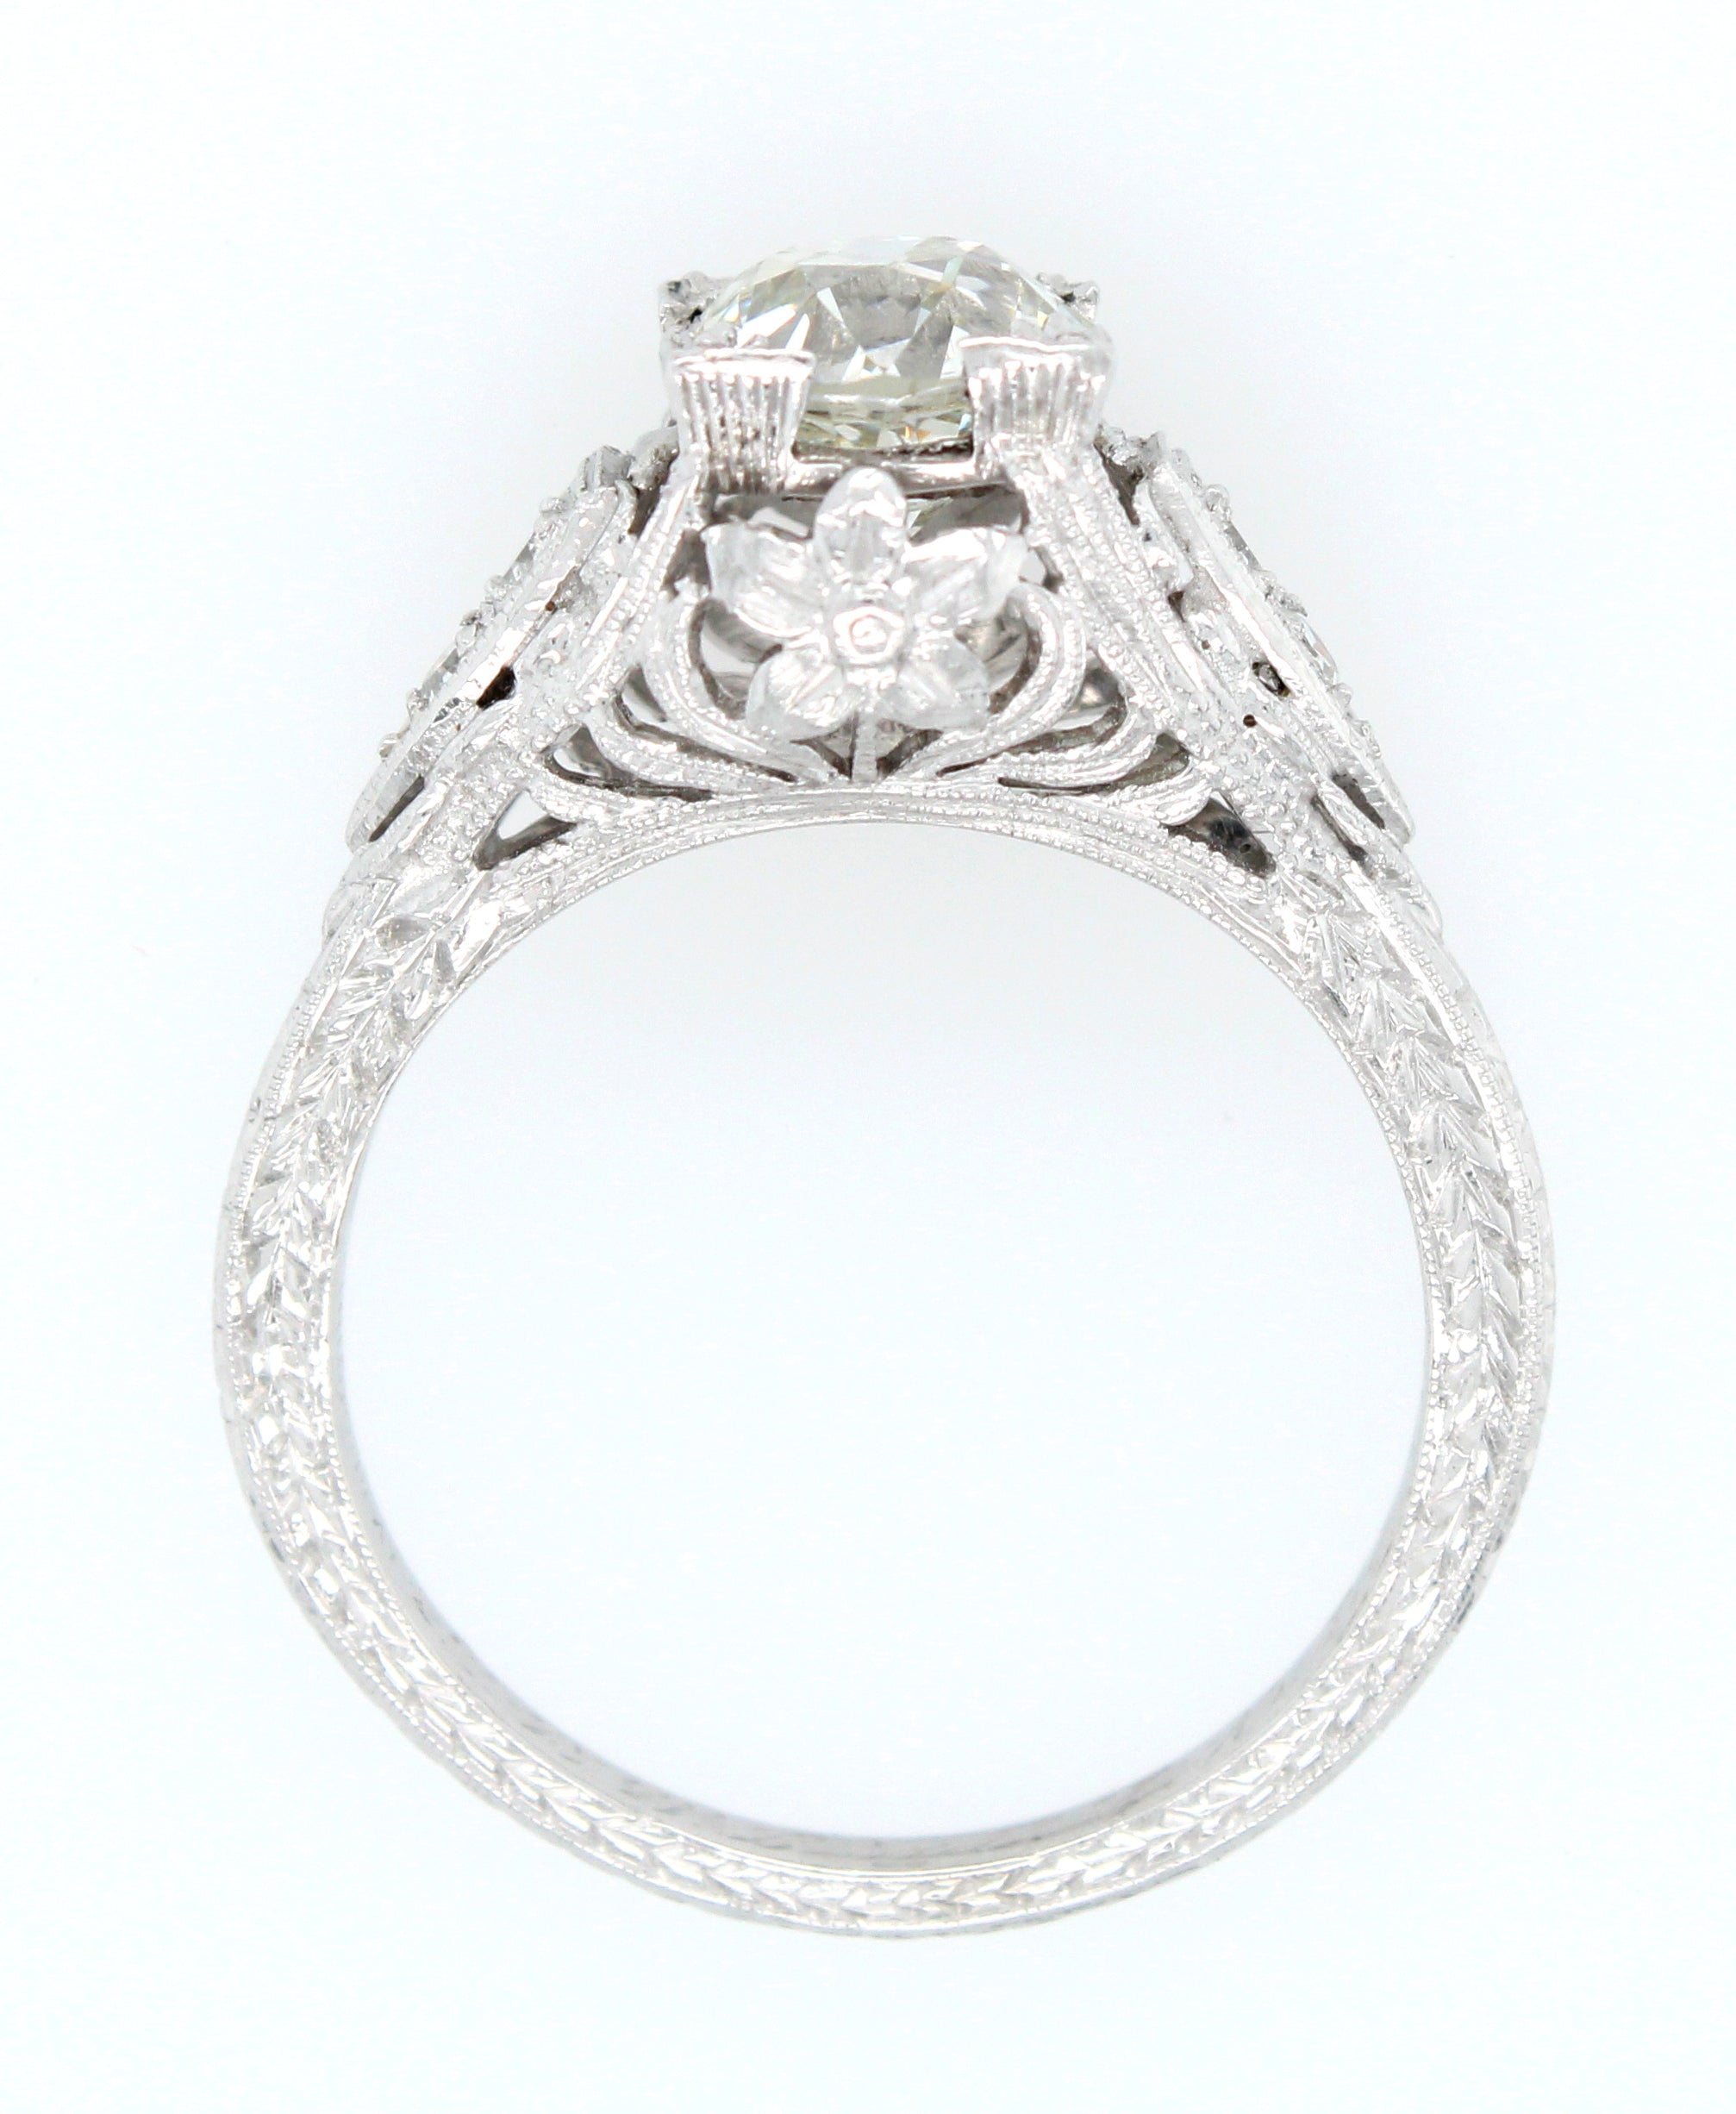 1920s Art Deco Diamond Engagement Ring in a 18K White Gold Filigree Se